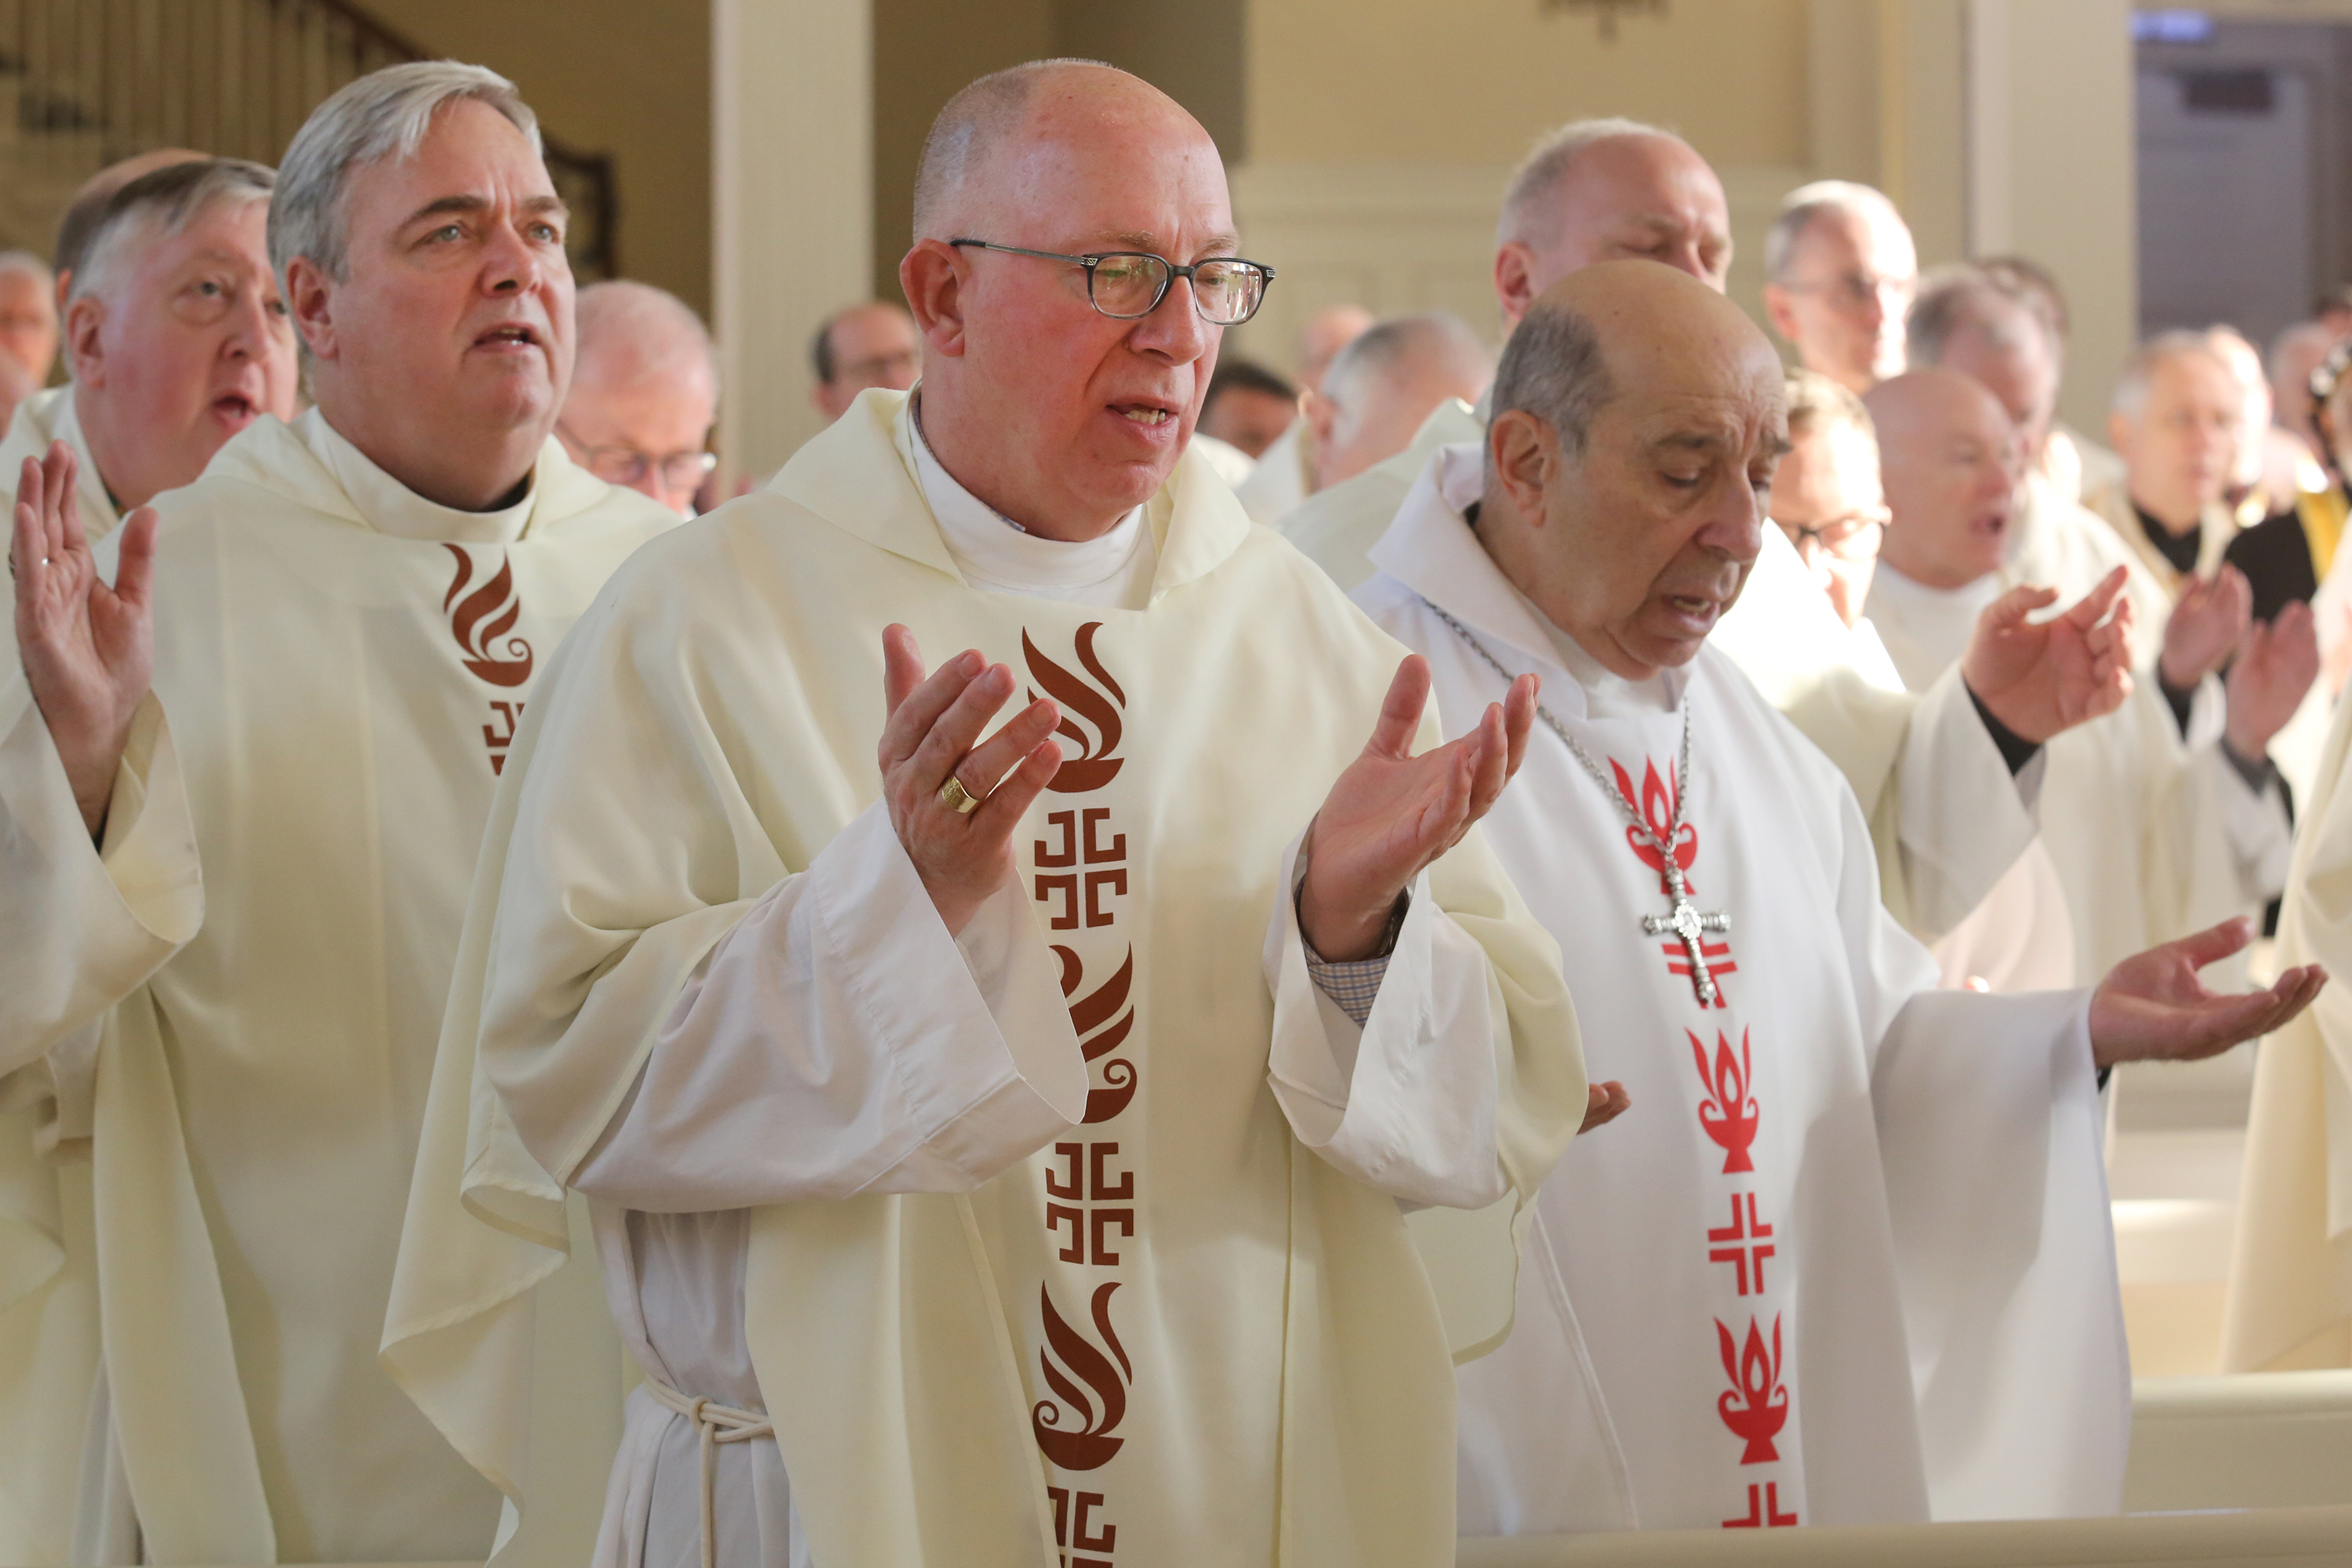 Retreat was 'inspiring, spirit-filled' say US bishops